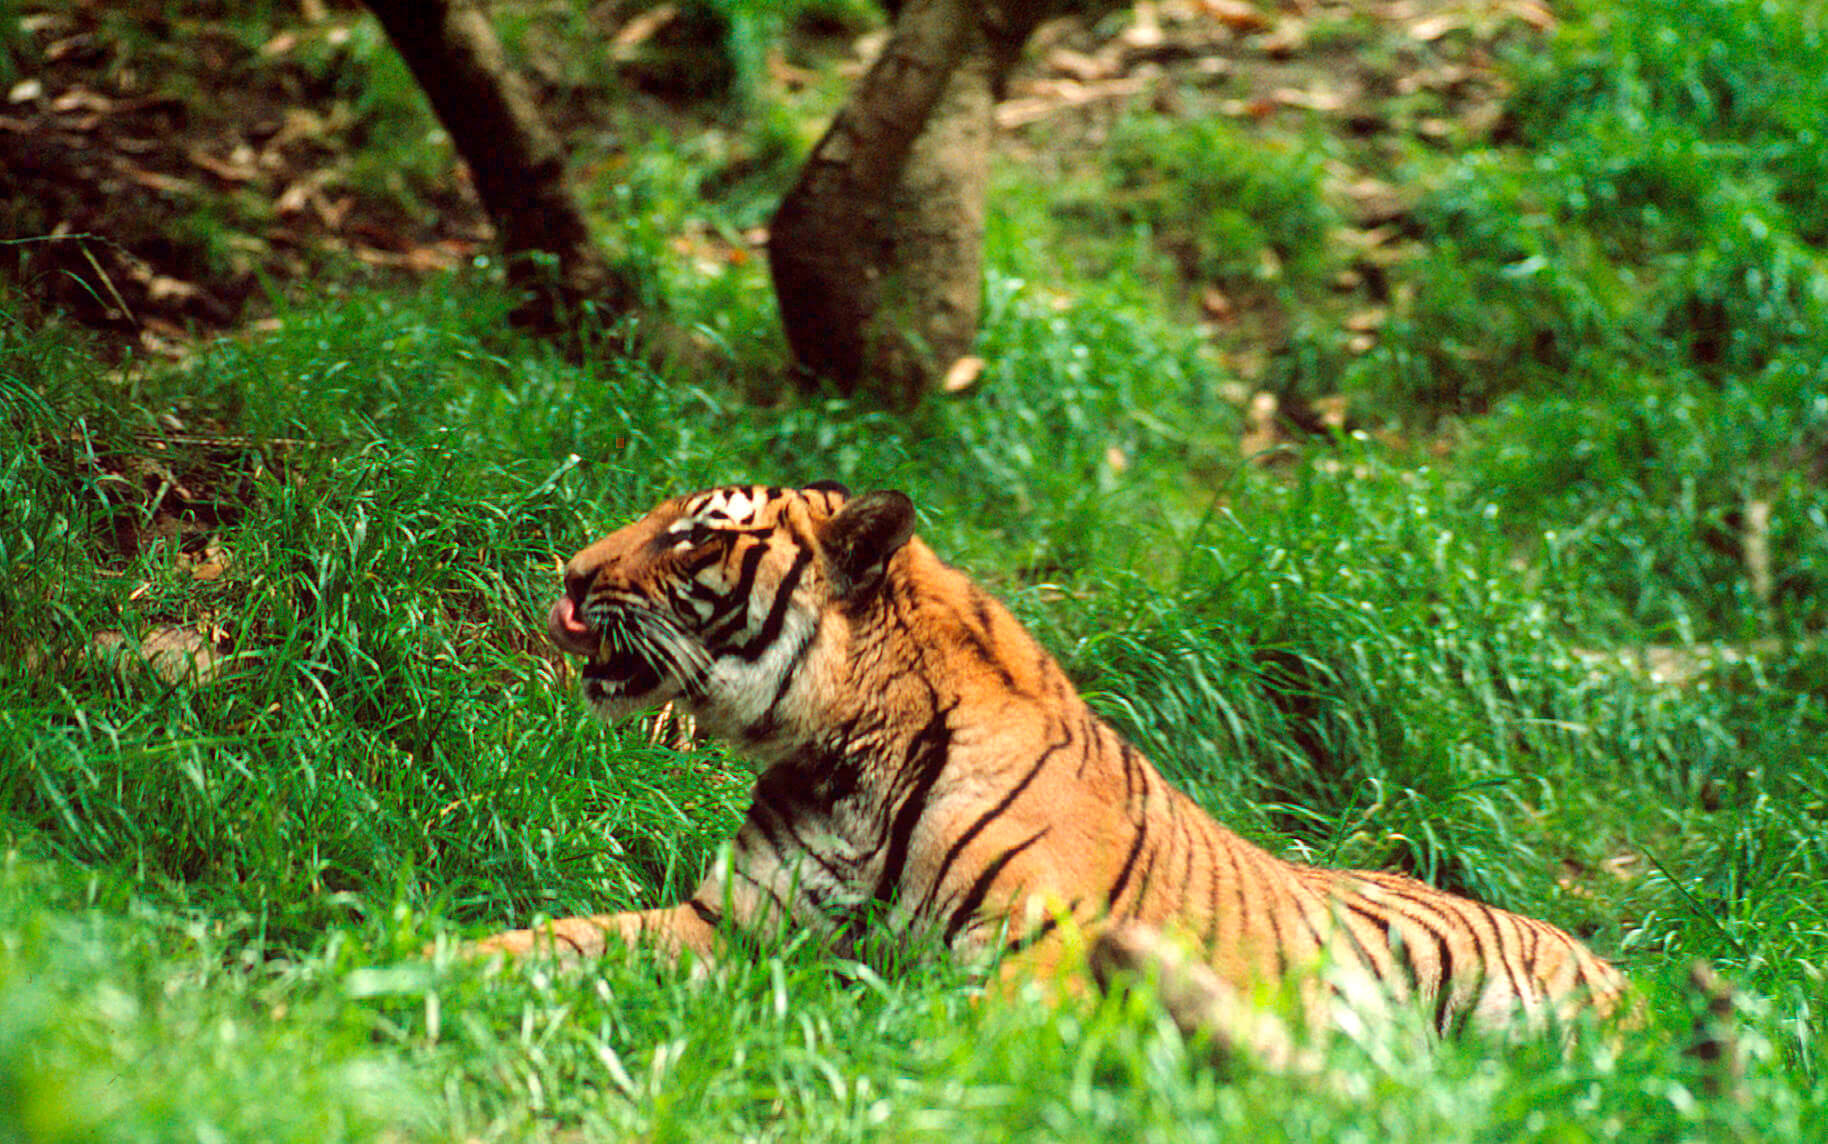 Tigre con rayas llamativas descansando en la vibrante hierba verde, con la lengua fuera.